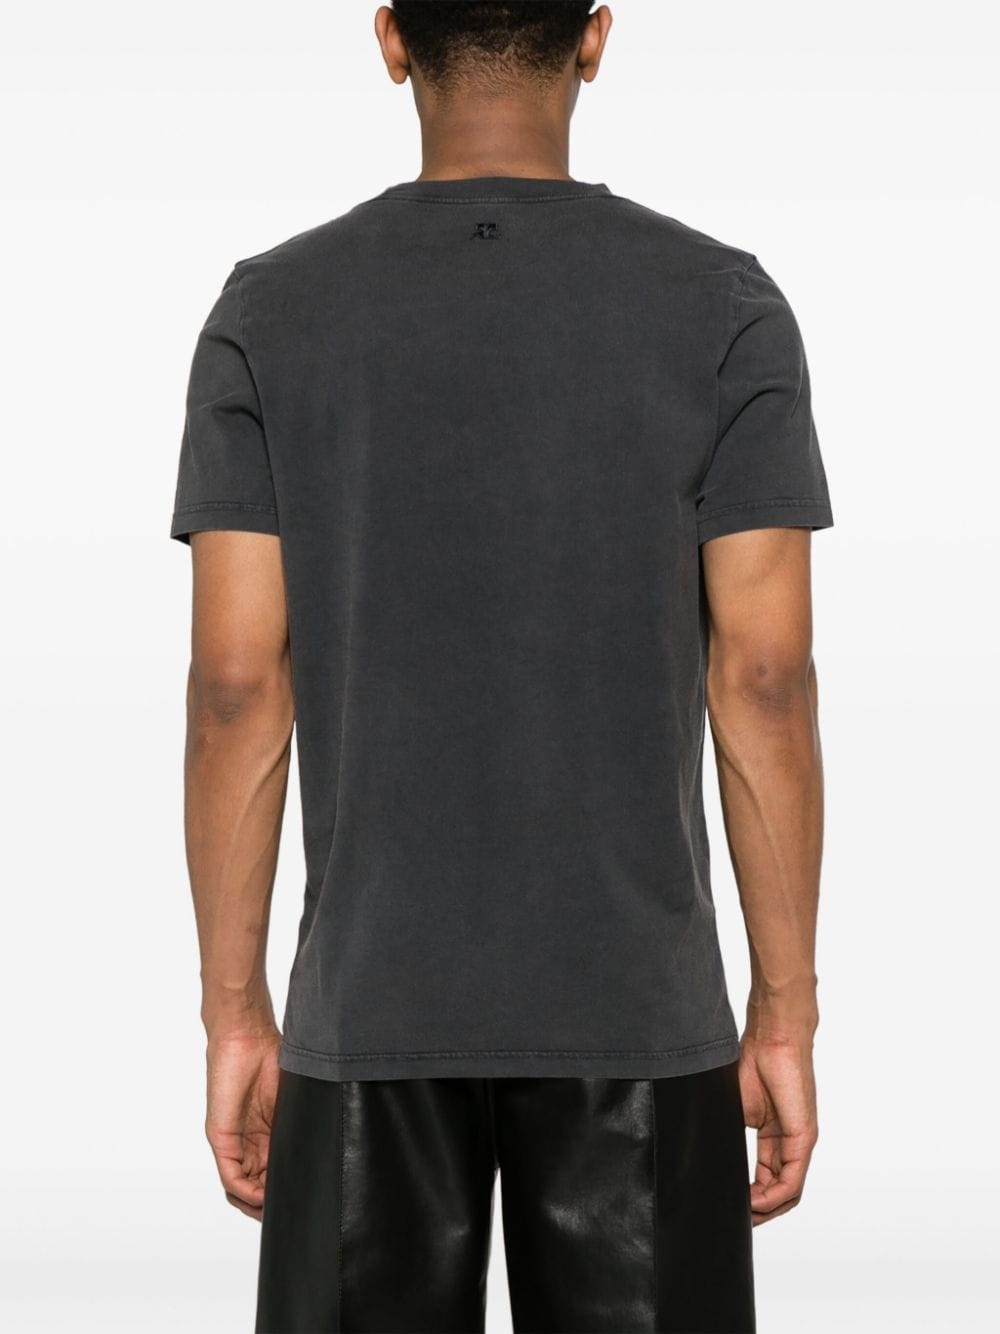 T-shirt grigio antracite